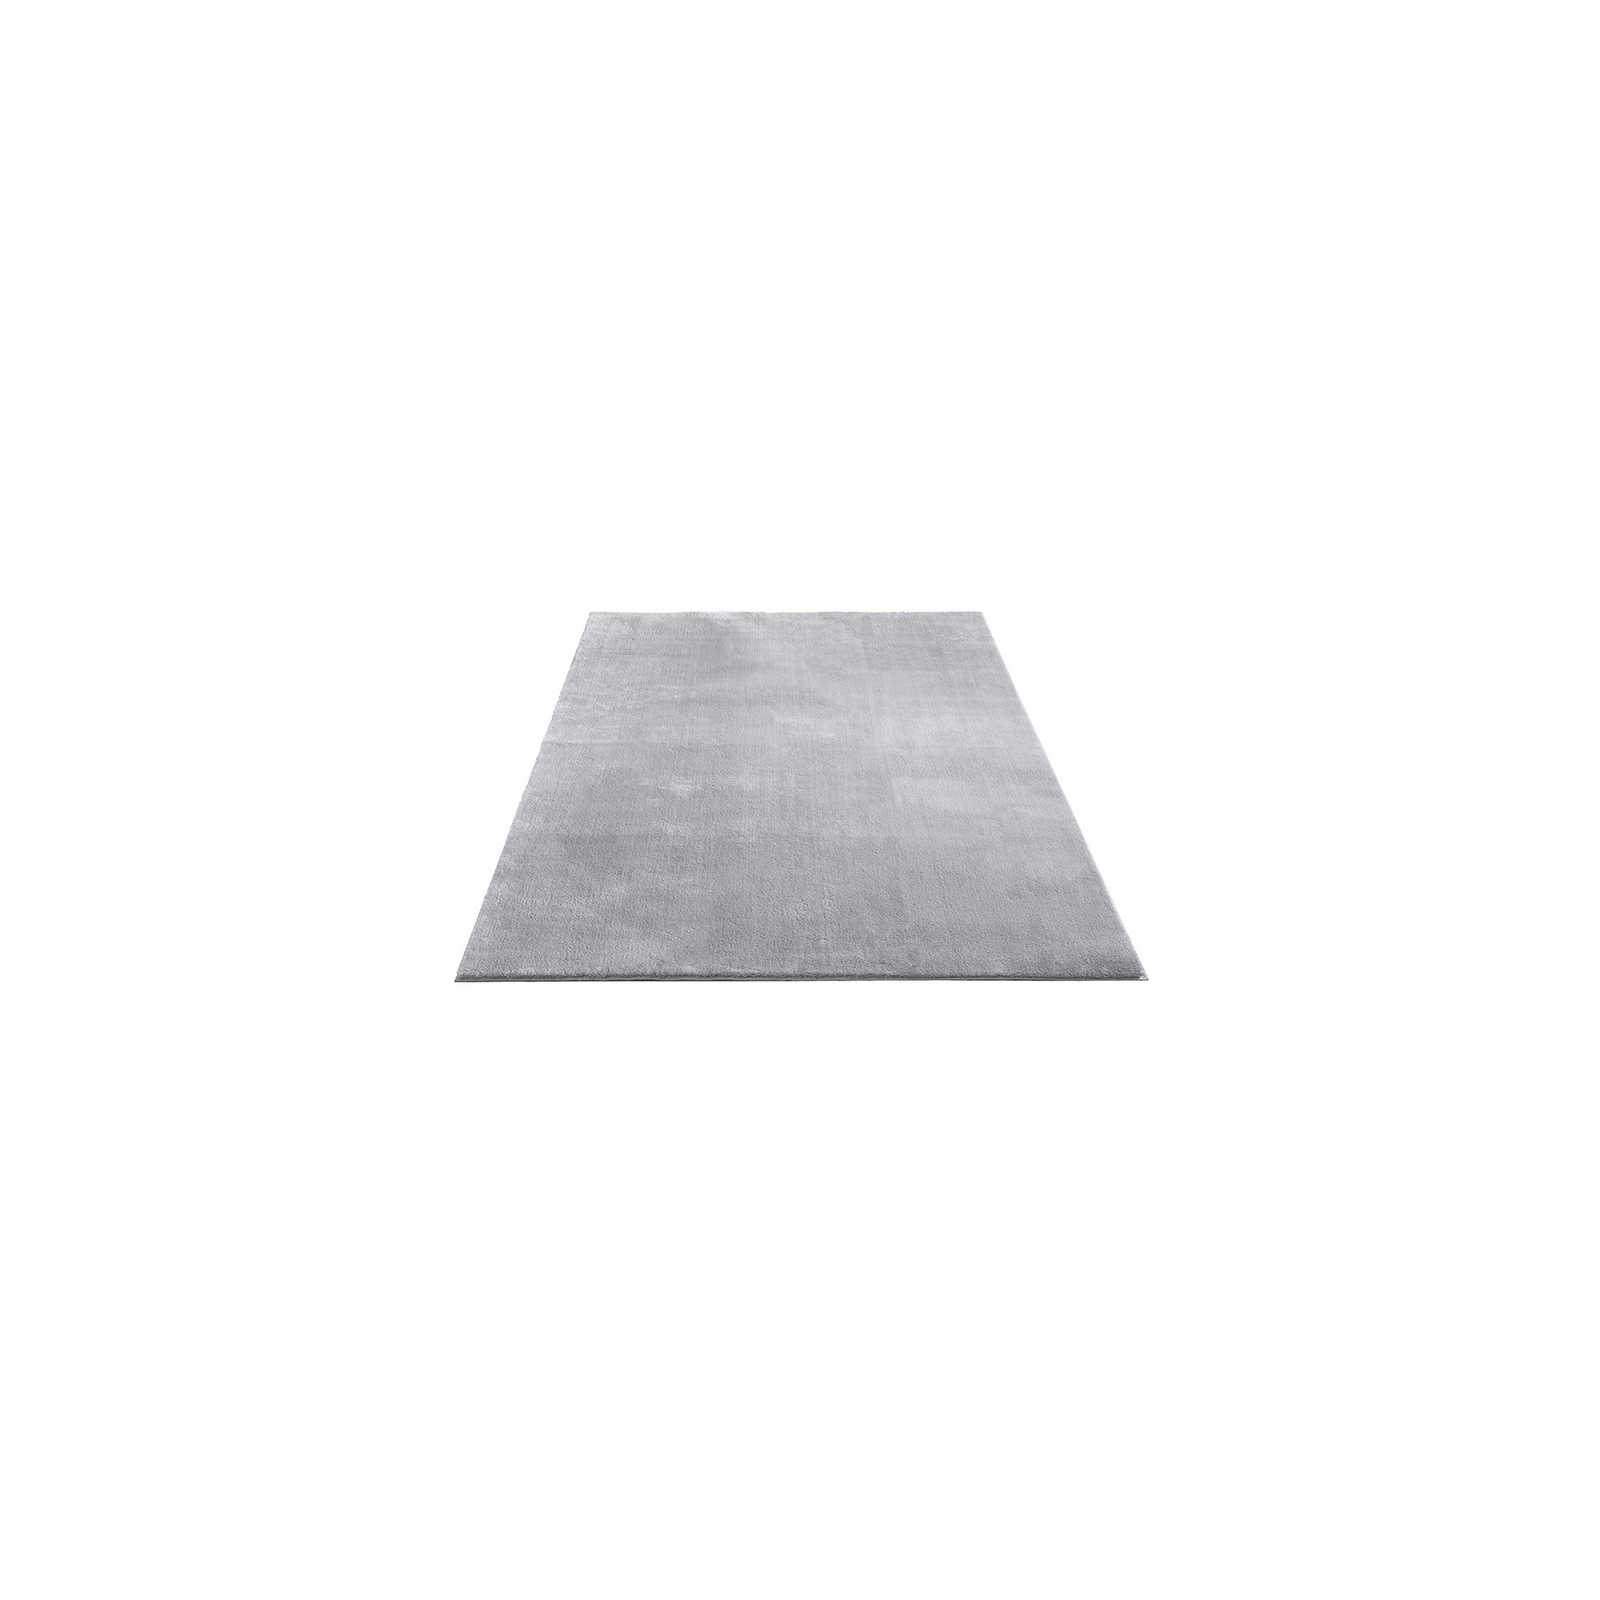 Fijn hoogpolig tapijt in grijs - 150 x 80 cm
